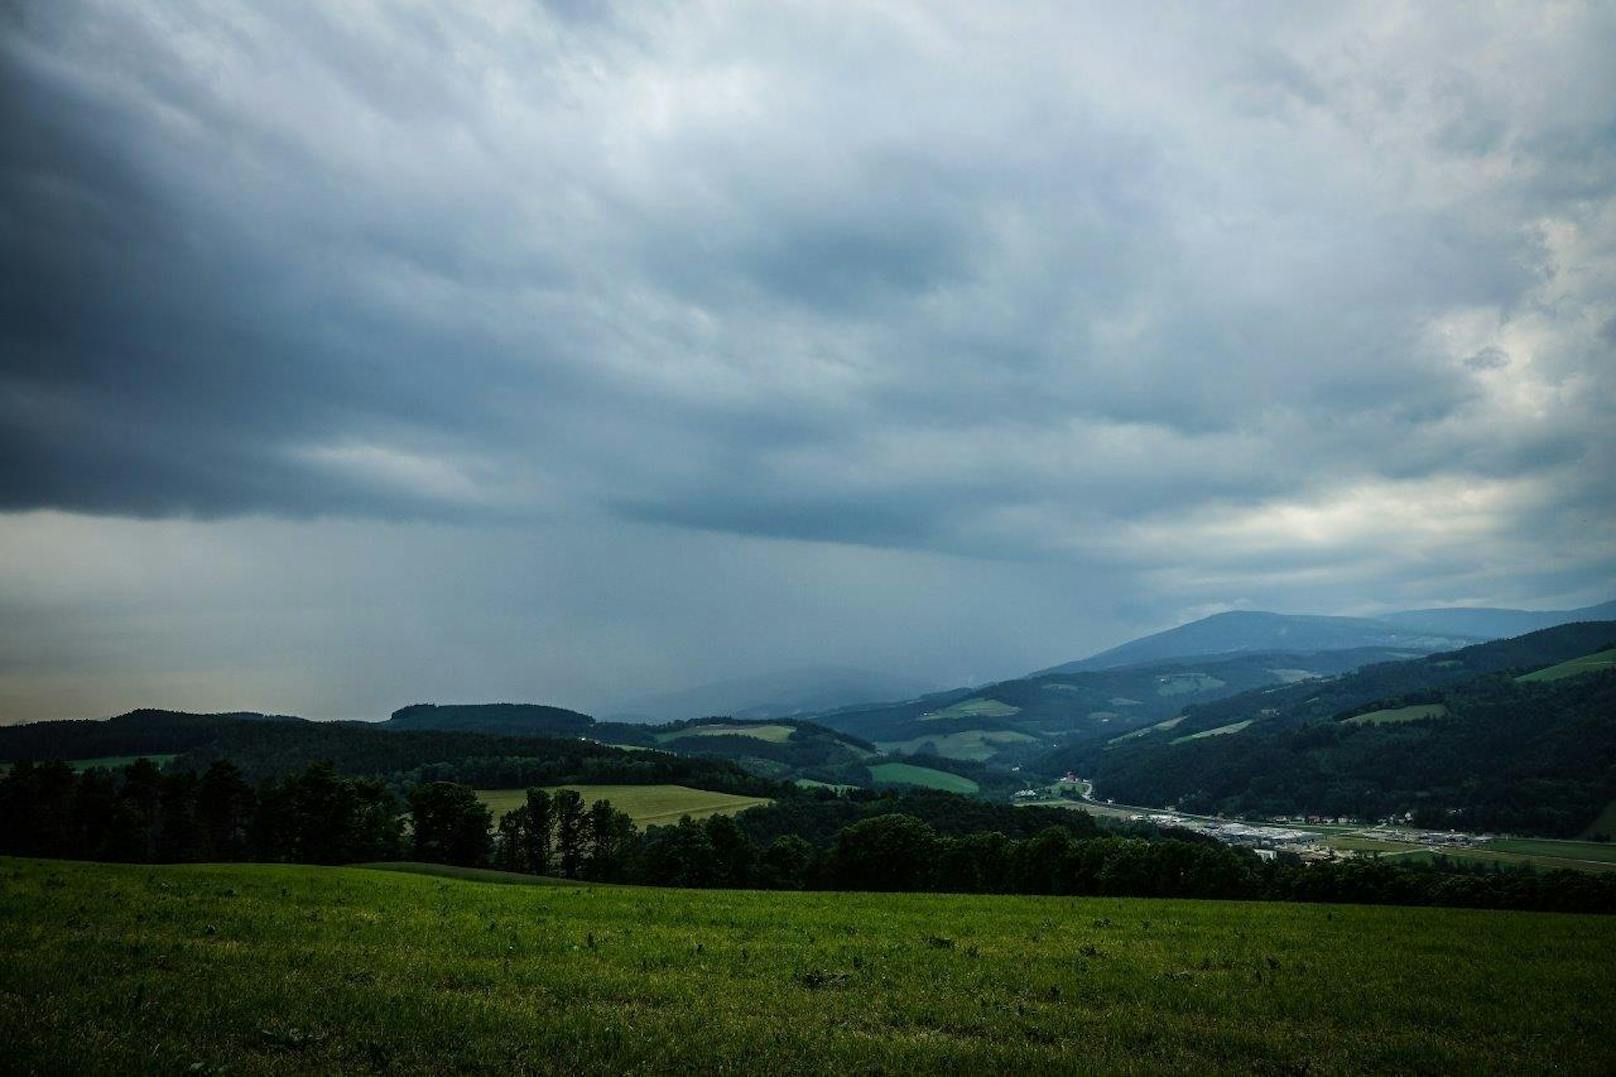 Heftige Regenfälle sowie Hagelunwetter haben vor allem im südlichen Niederösterreich zu Überflutungen geführt. Mehrere Feuerwehren waren im Dauereinsatz.